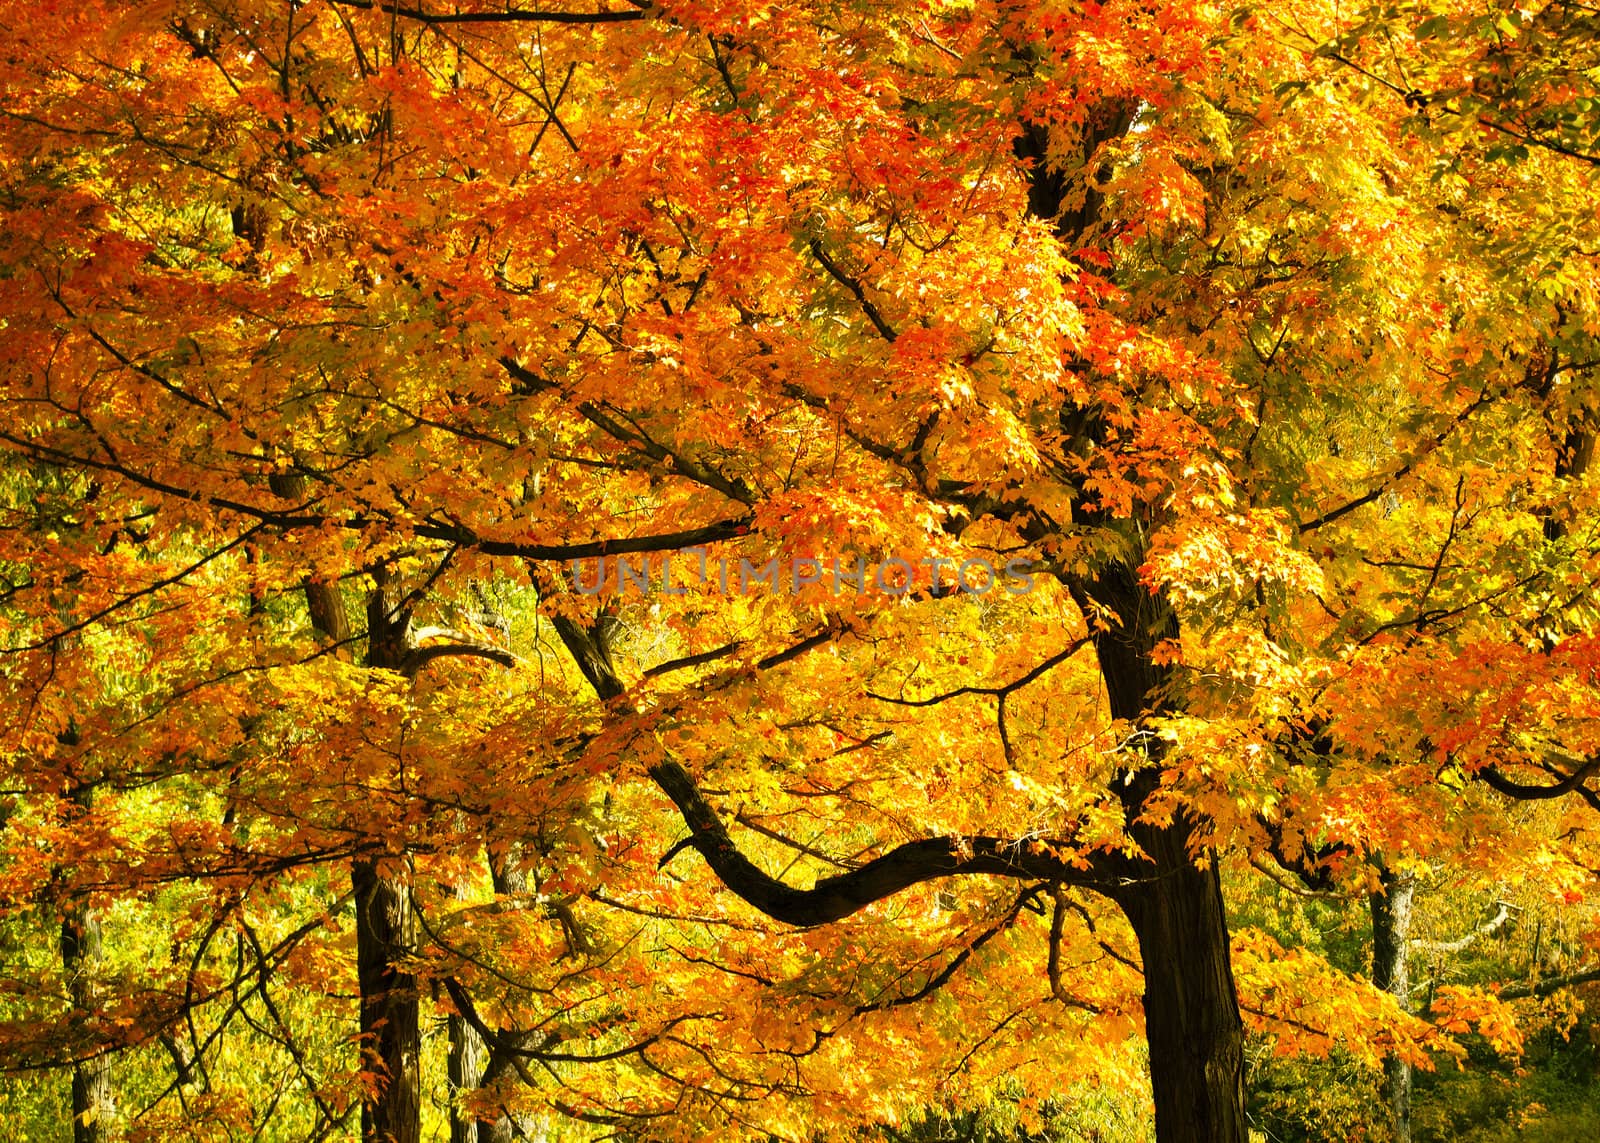 Bright Fall Foliage by mary981